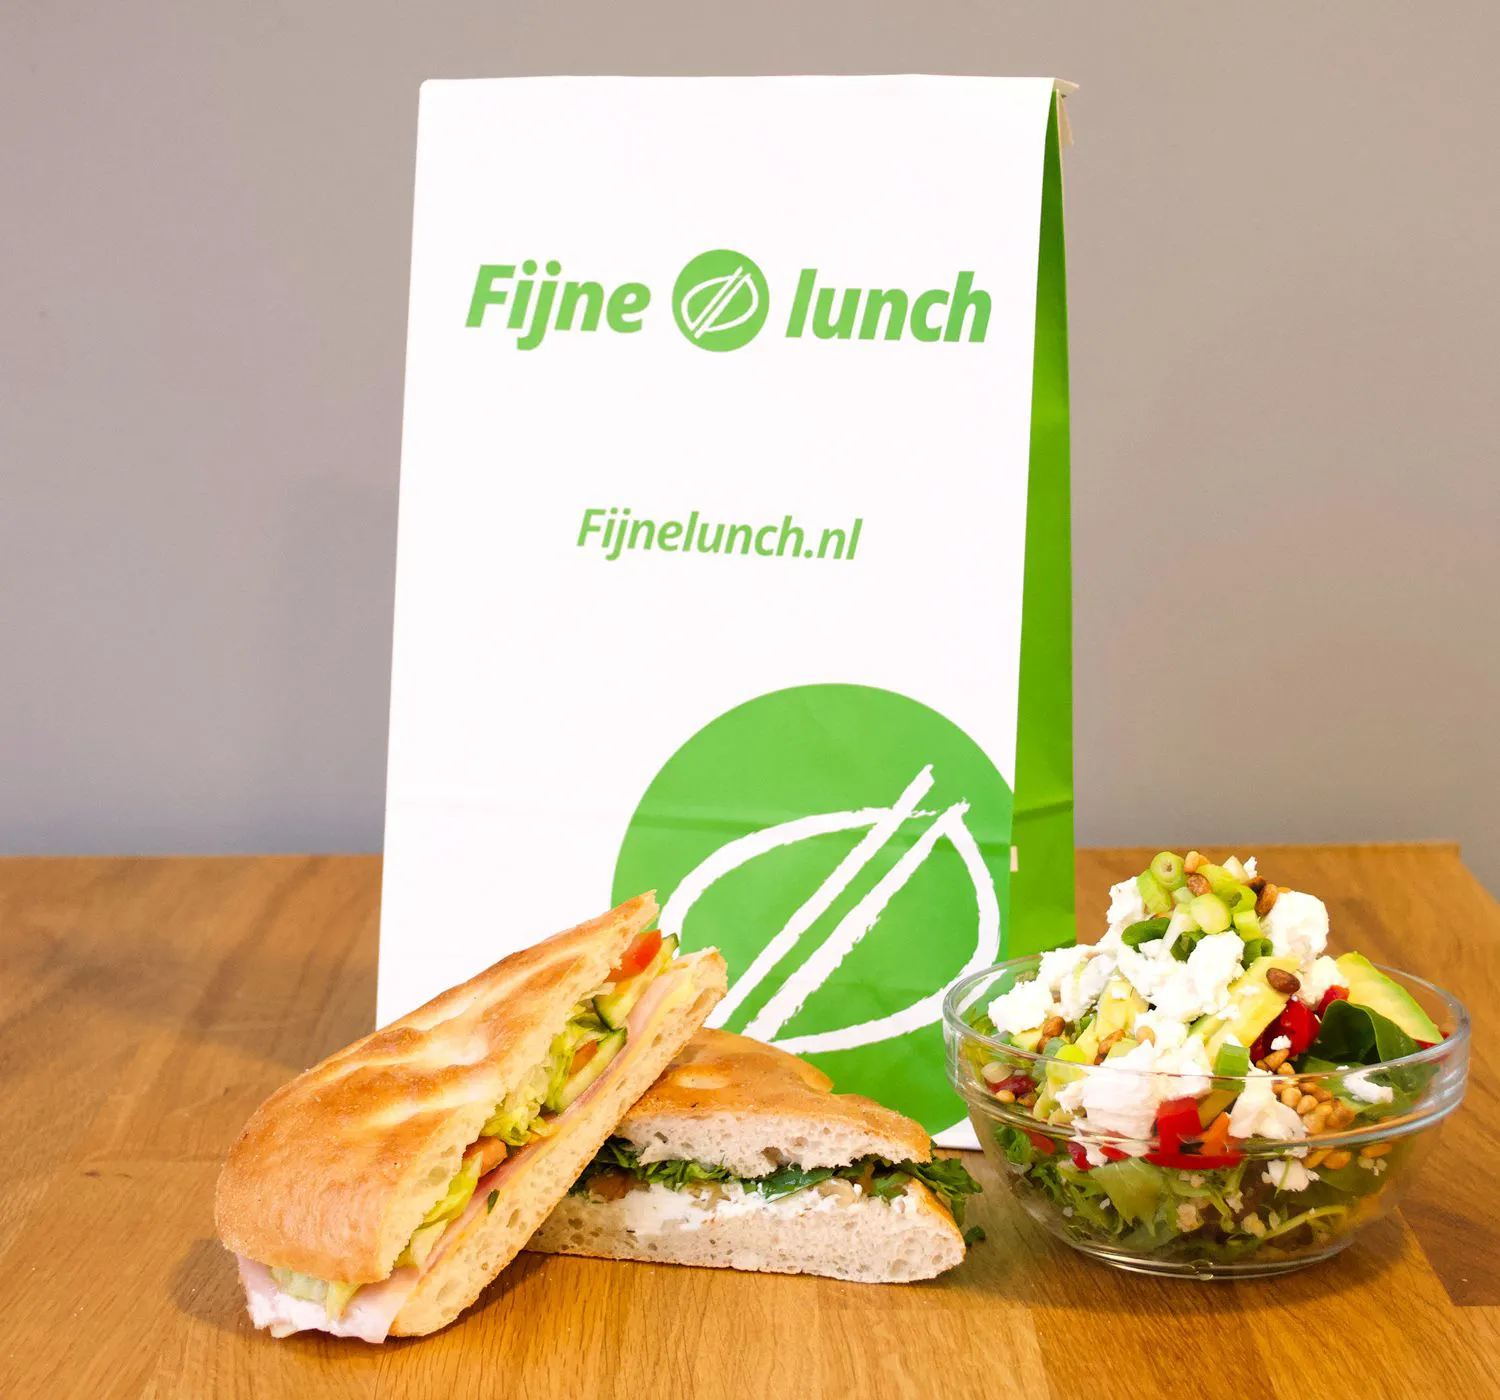 Lunchtas fijne sandwiches & salade